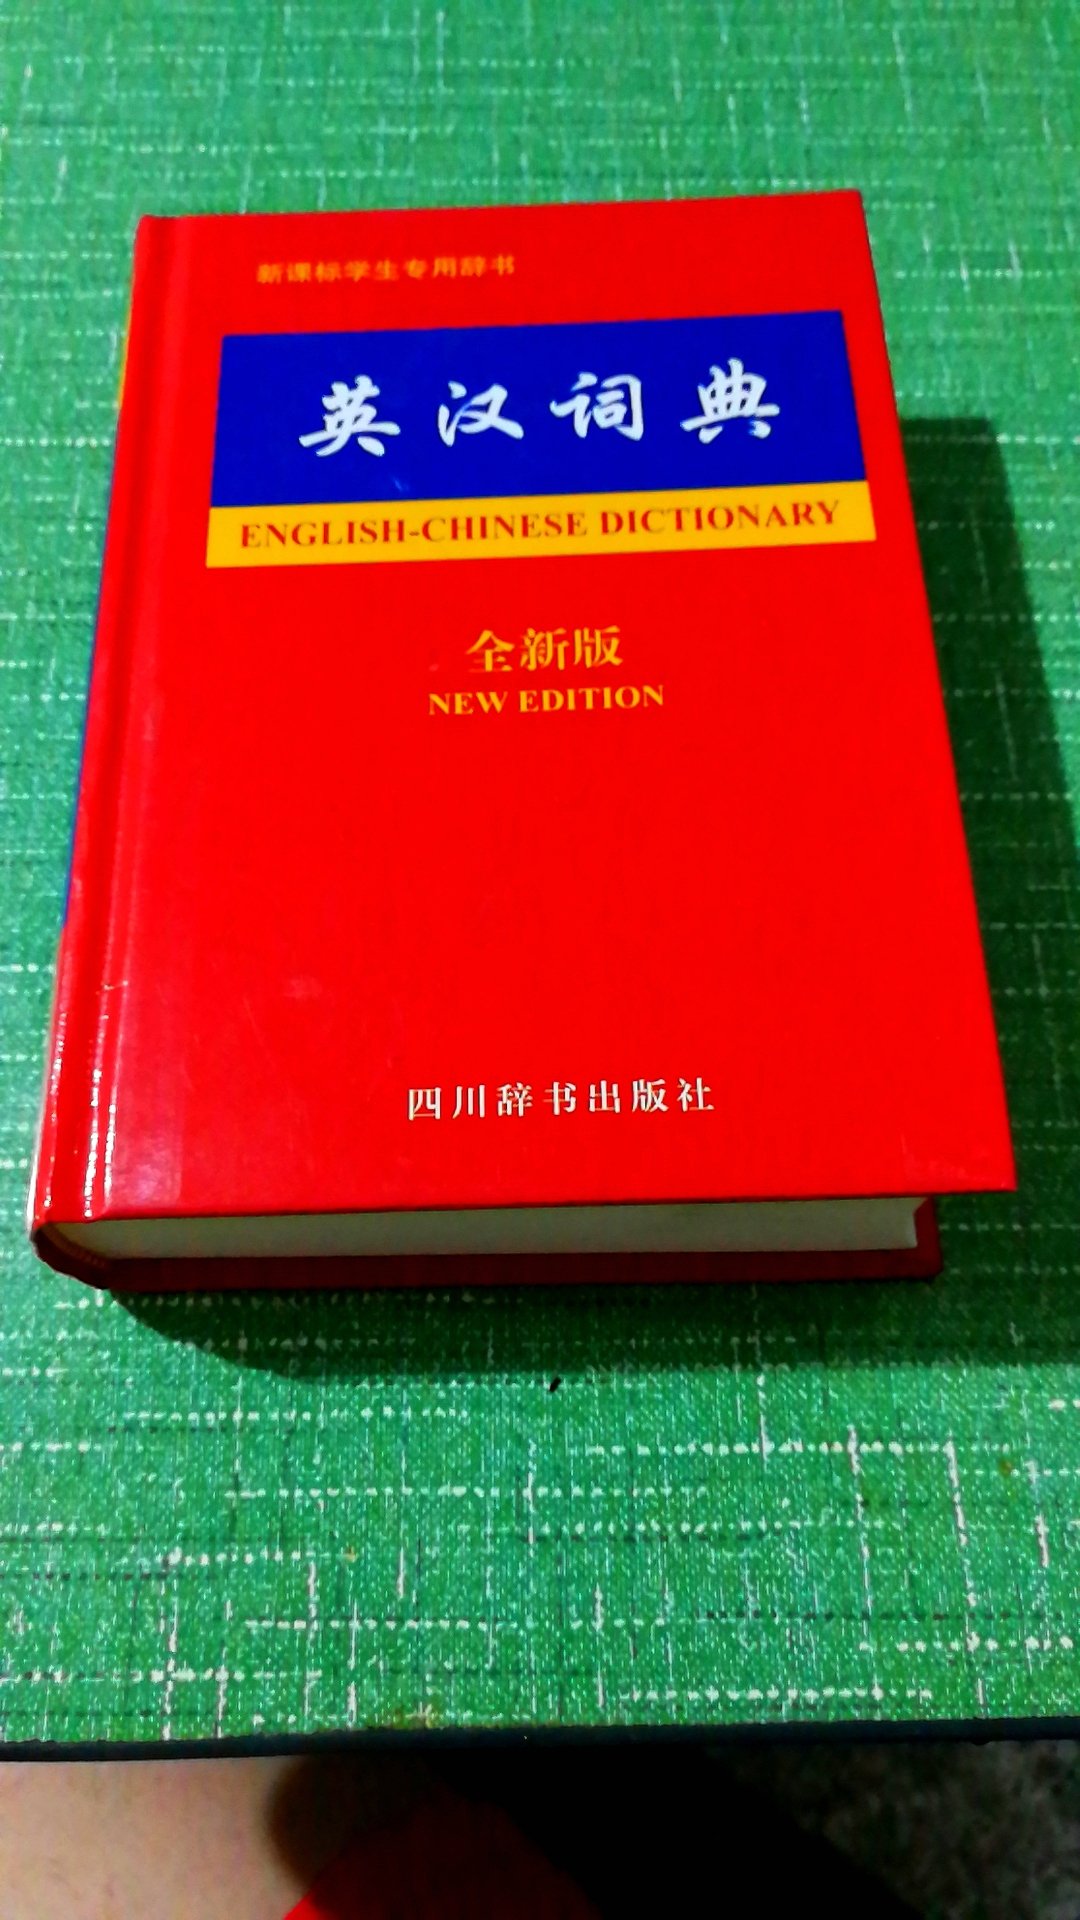 还不错的英汉词典，纸质挺好的